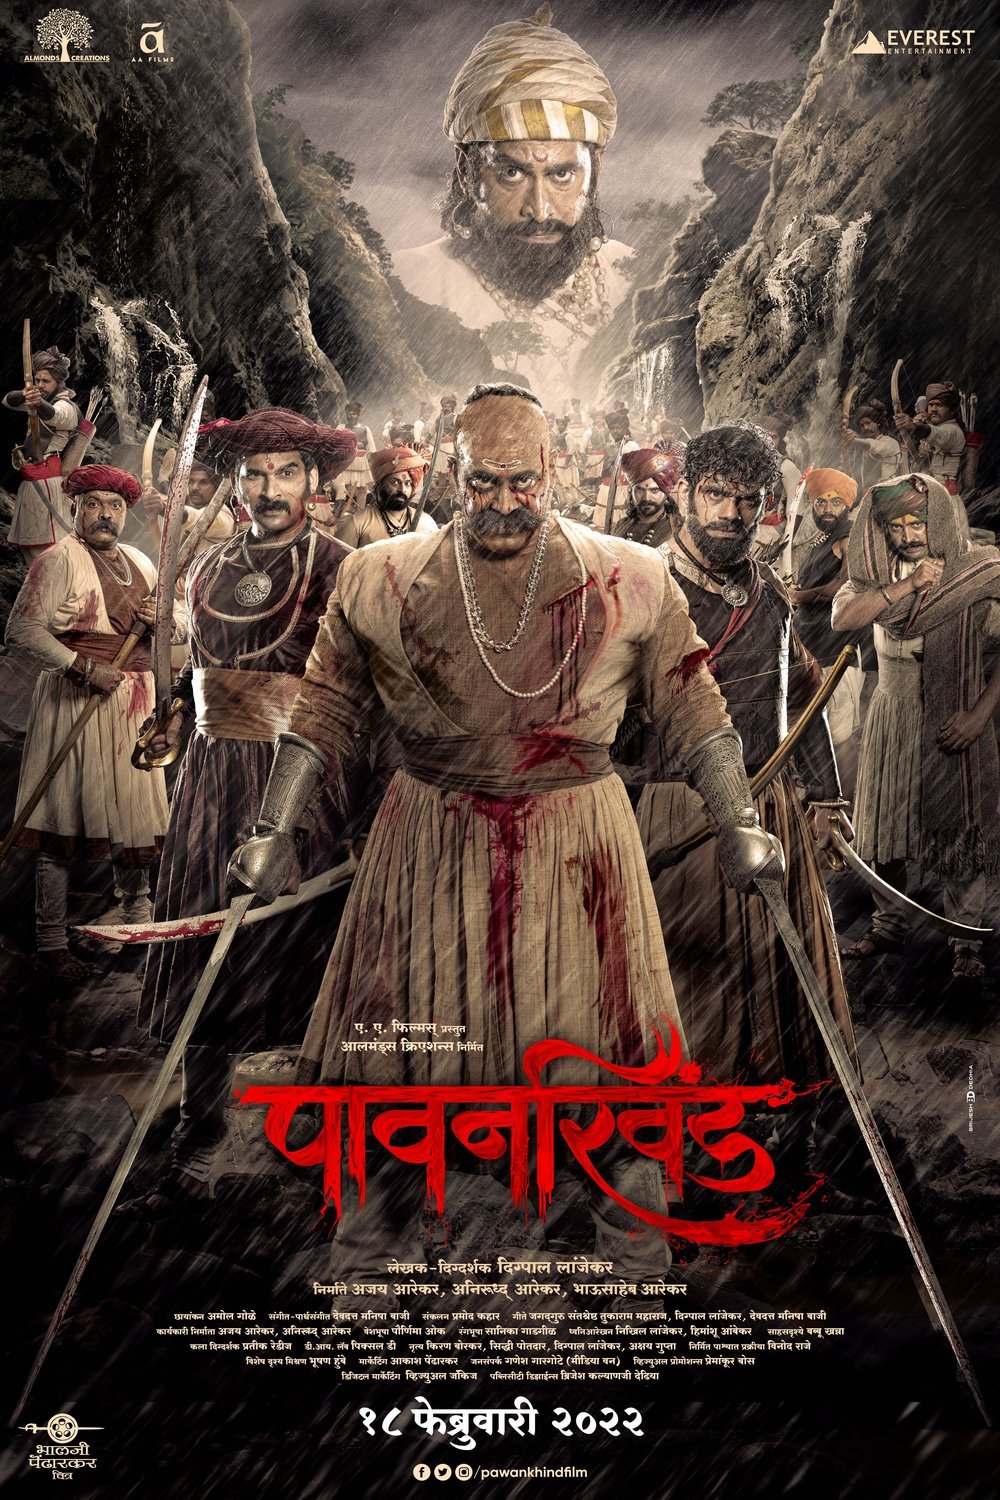 Marathi poster of the movie Pawankhind